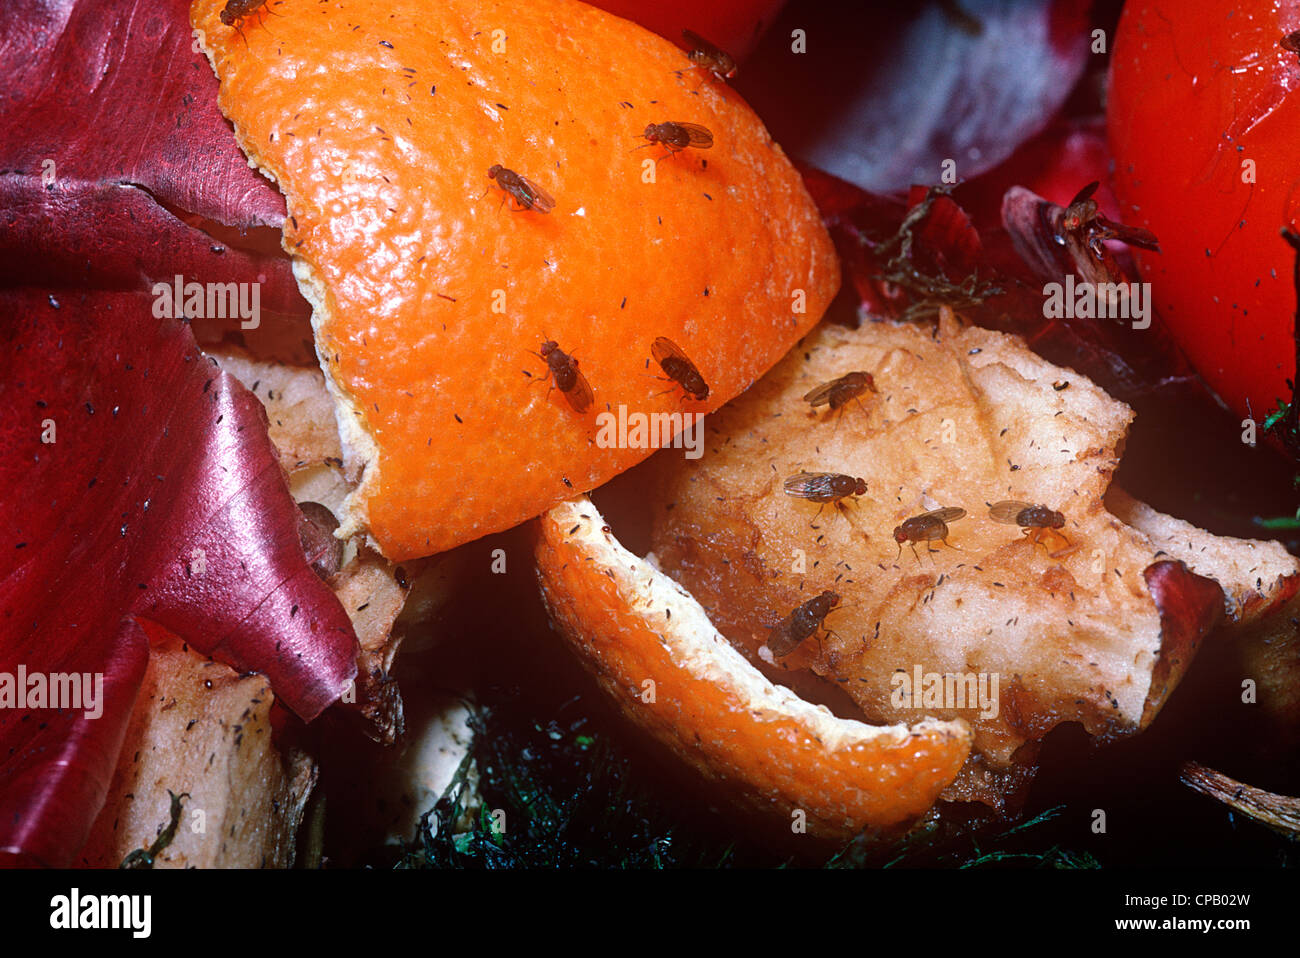 Petite mouche à fruits (Drosophila funebris. : Drosophilidae) se nourrissant d'un tas de compost, UK Banque D'Images